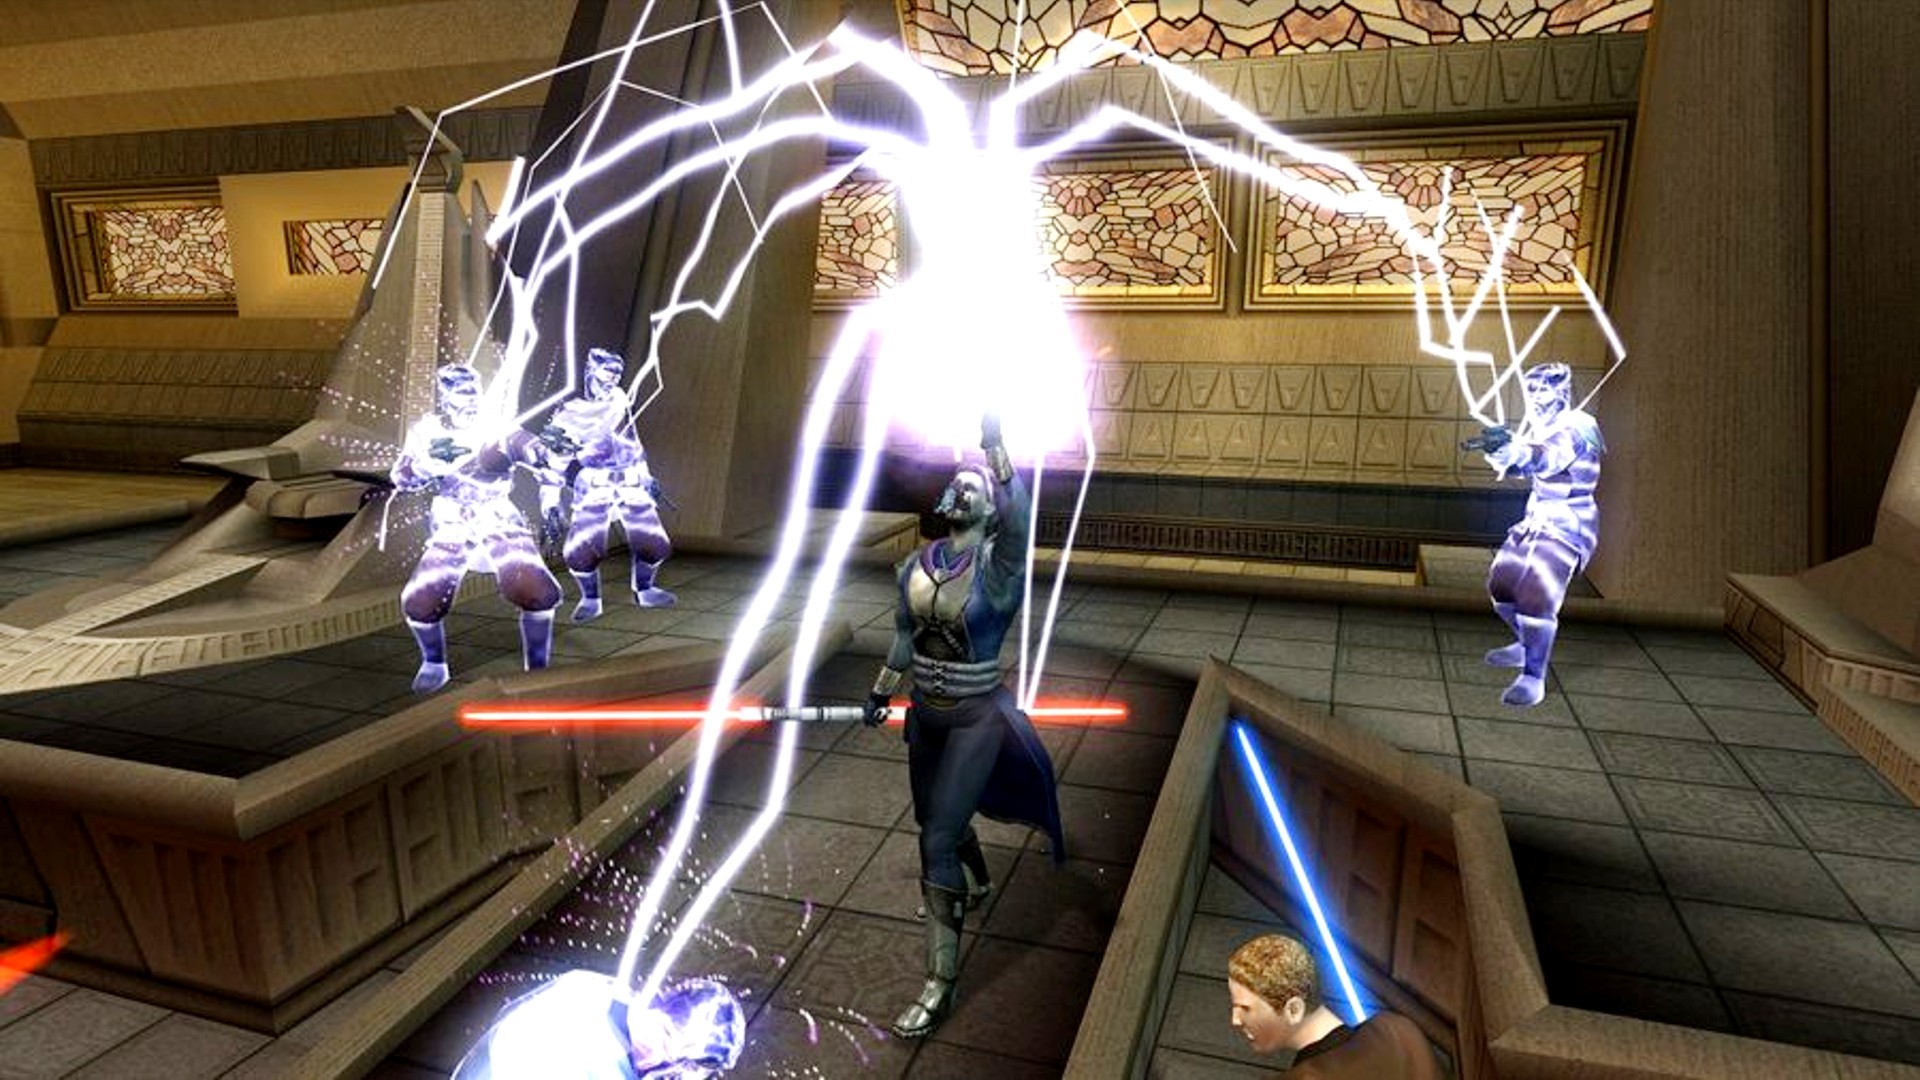 أفضل ألعاب آر بي جي: حرب النجوم: Knights of the Old Republic 2. تظهر الصورة Jedi يهاجم اثنين من خصدين مع Lightning القوة